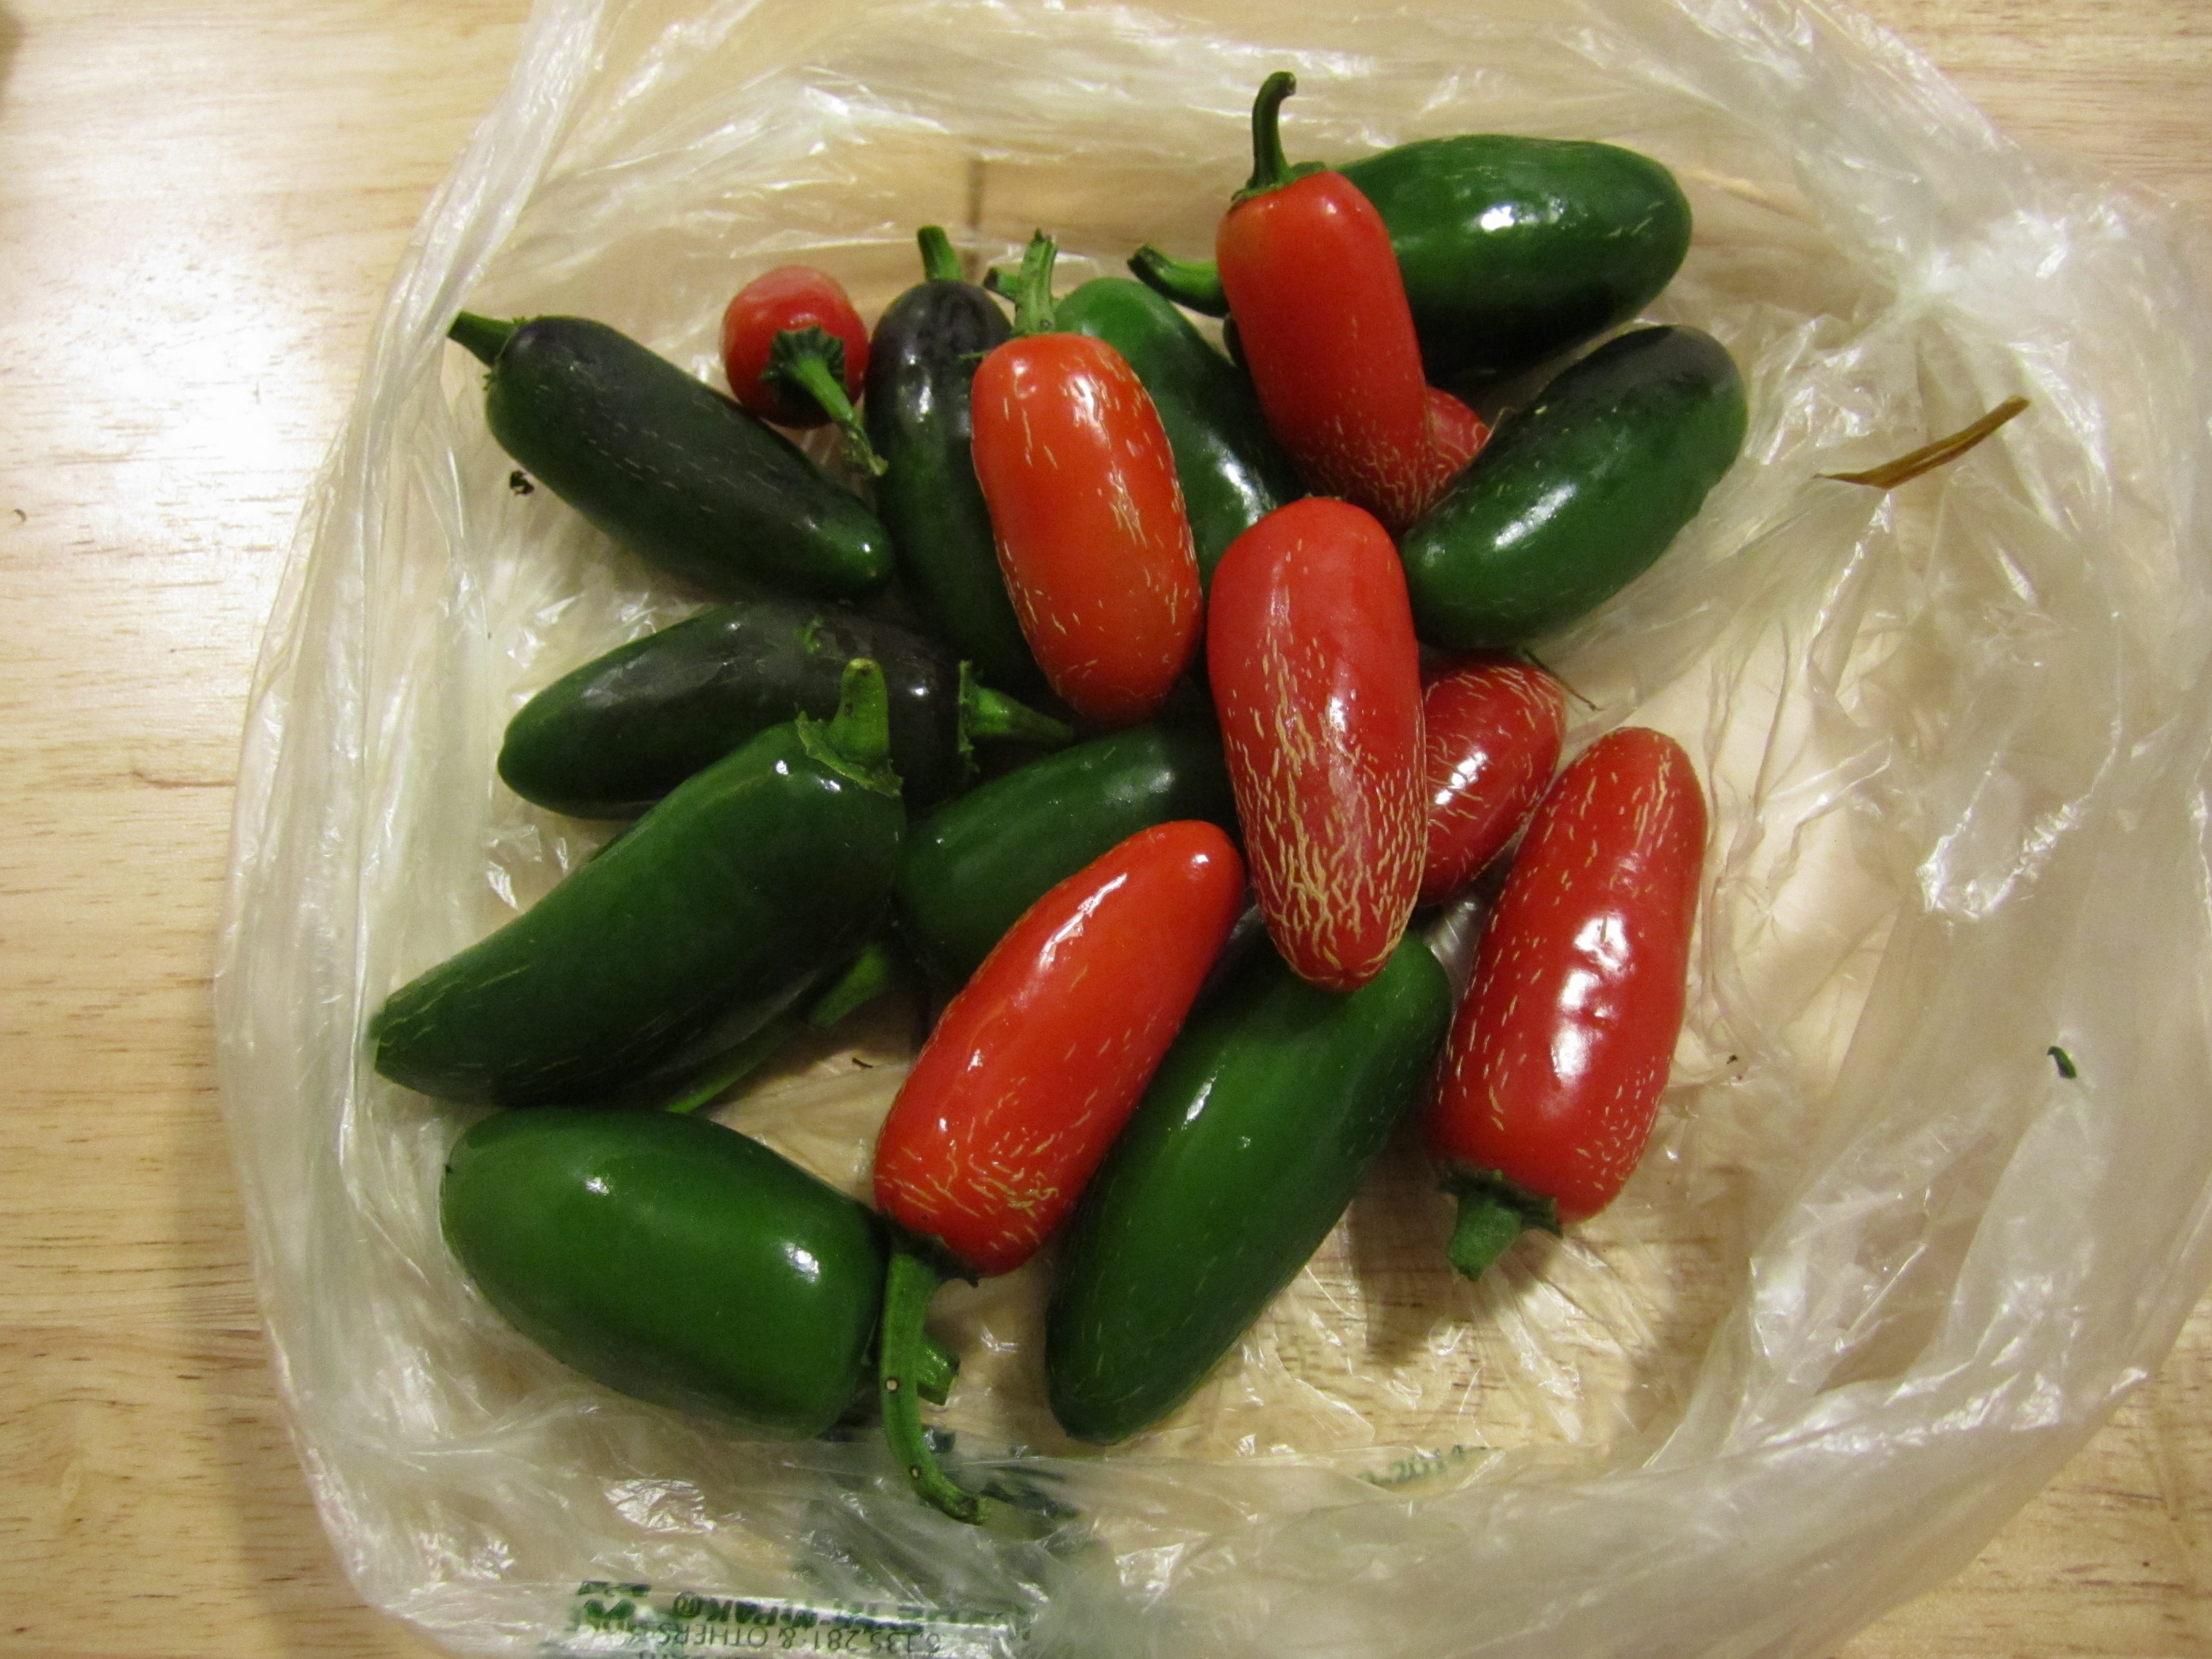 How do I freeze jalapeno peppers?